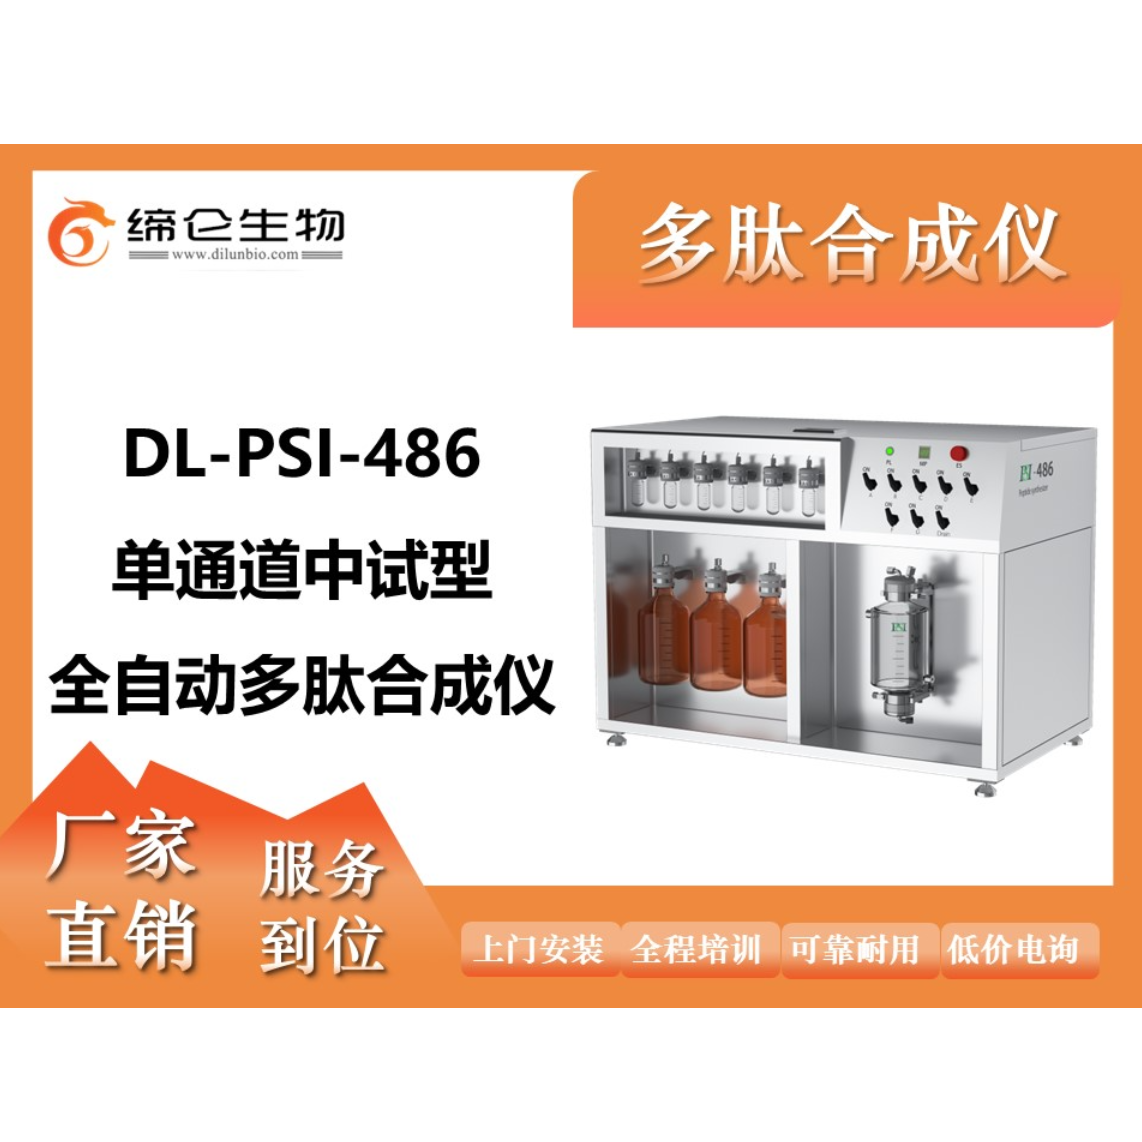 DL-PSI全自动多肽合成仪486单通道中试型